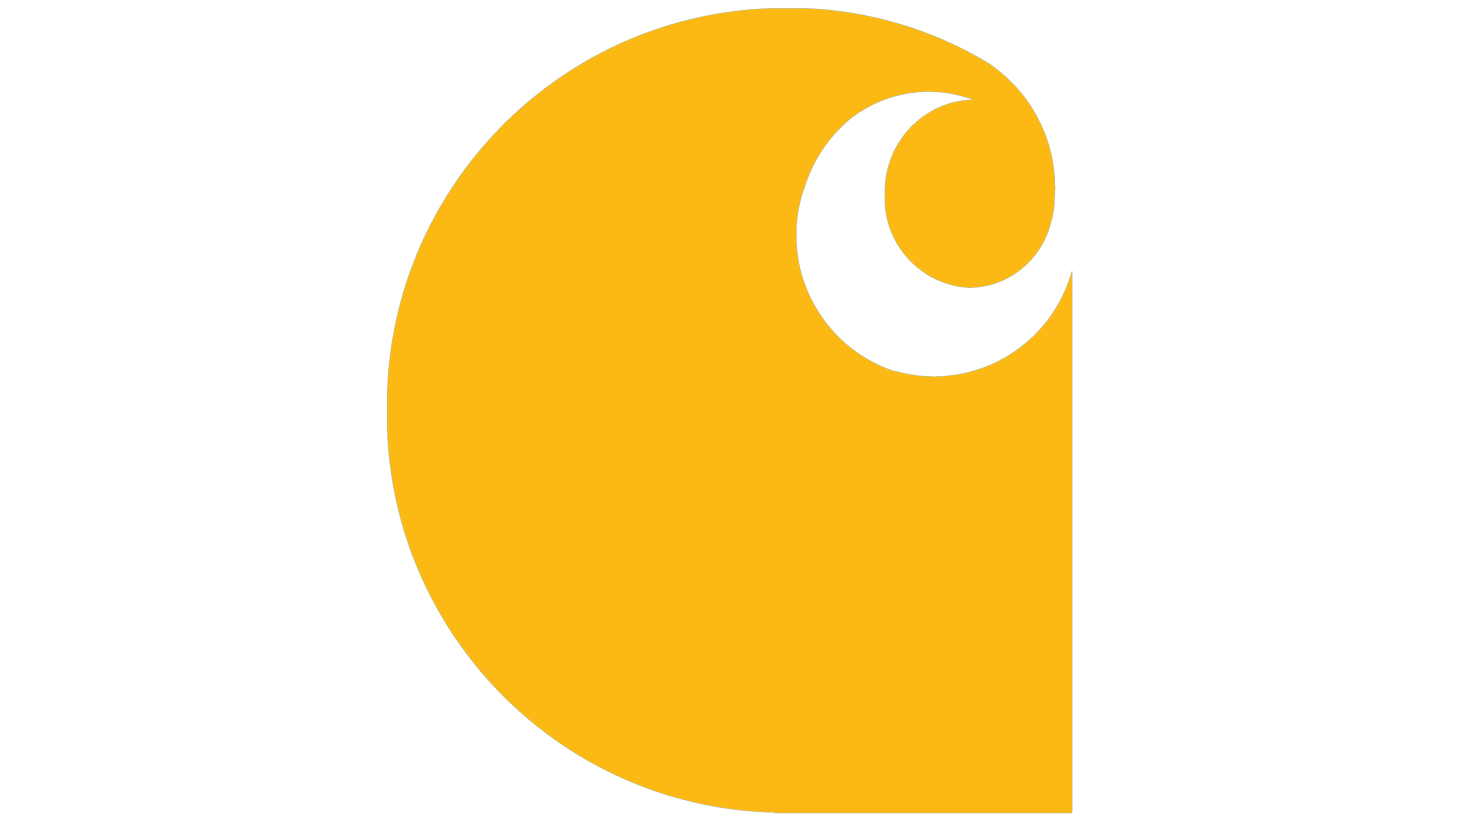 Carhartt symbol